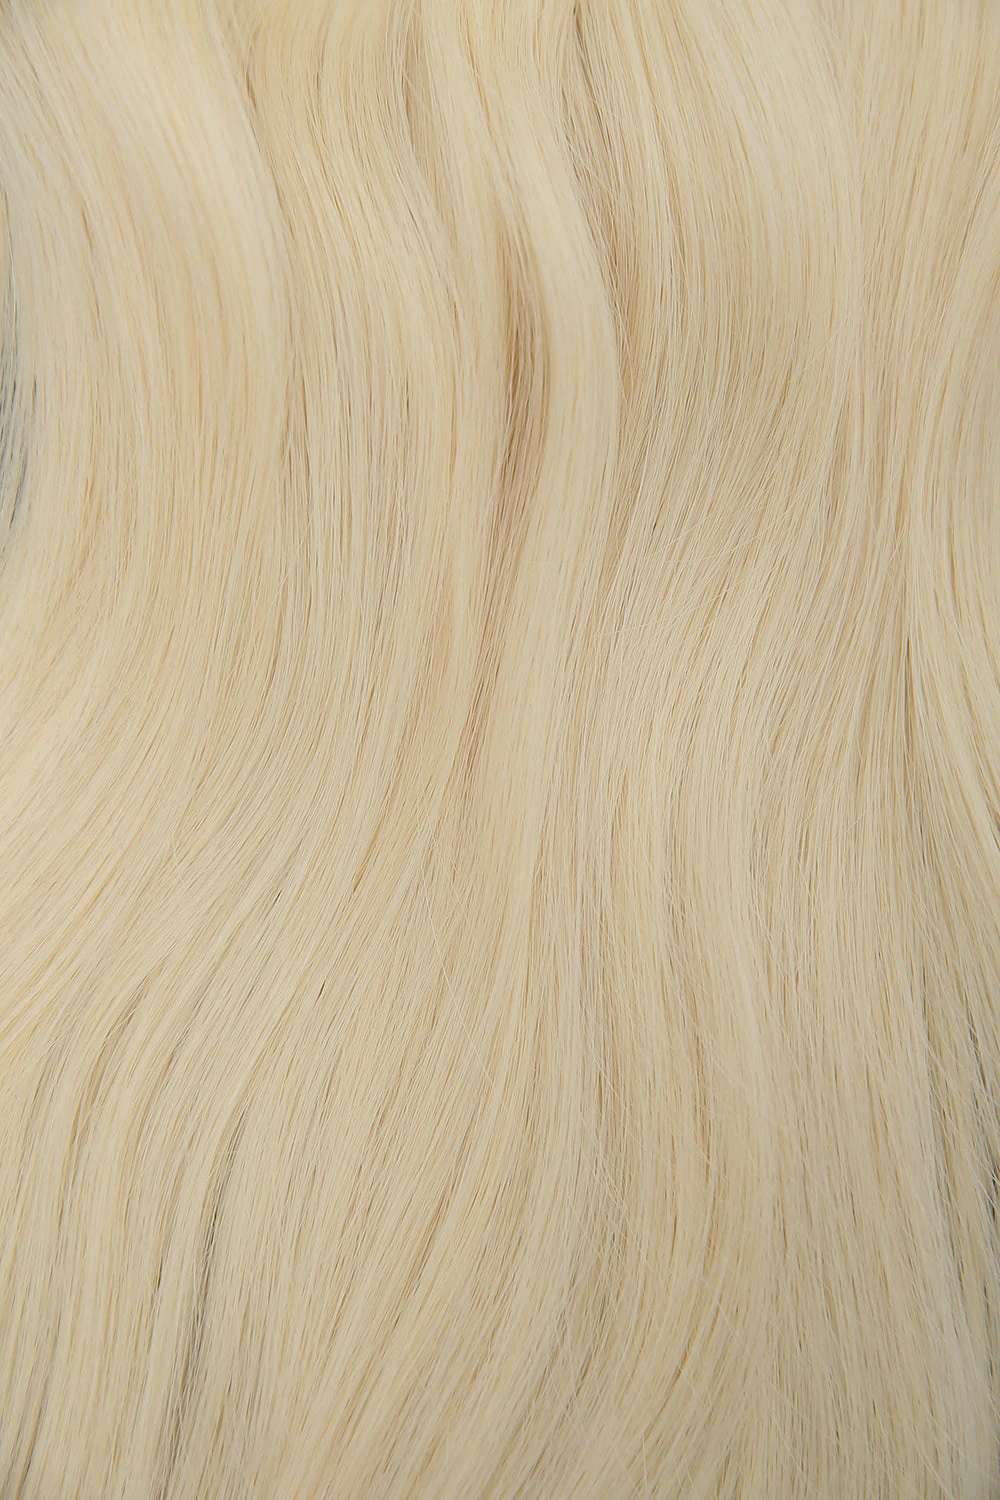 #613 Platinum Blonde Invisi Tape Hair Extensions